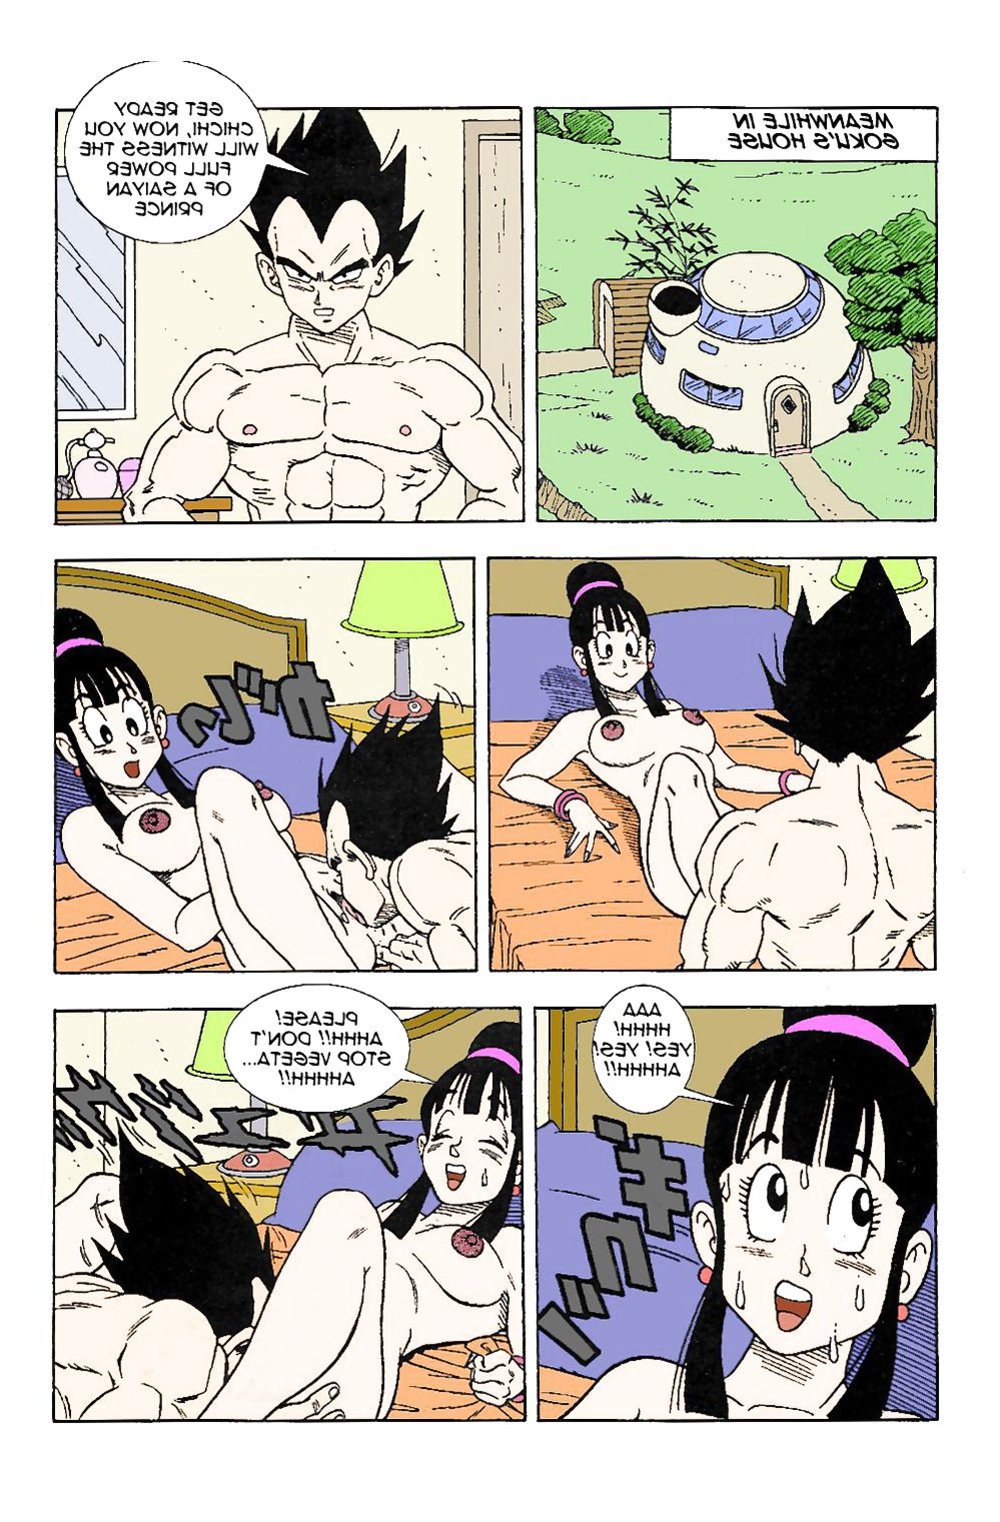 Dbz Vegeta Porks Gokus Wifey Chichi Zb Porn